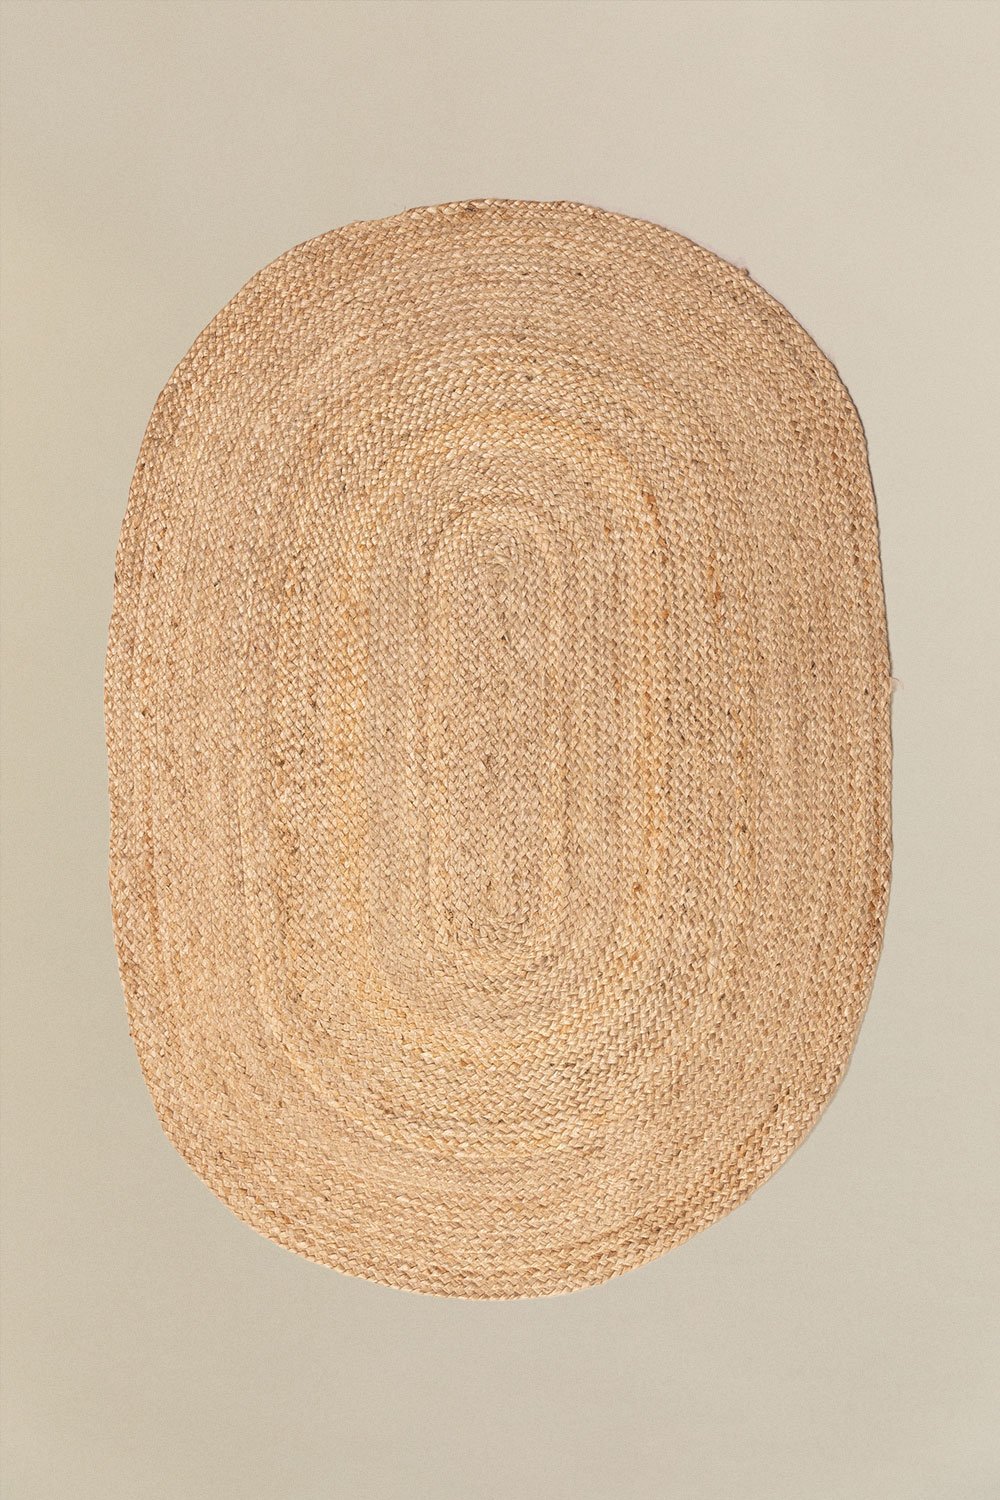 Tapis en jute naturel (141x99,5 cm) Tempo, image de la galerie 1